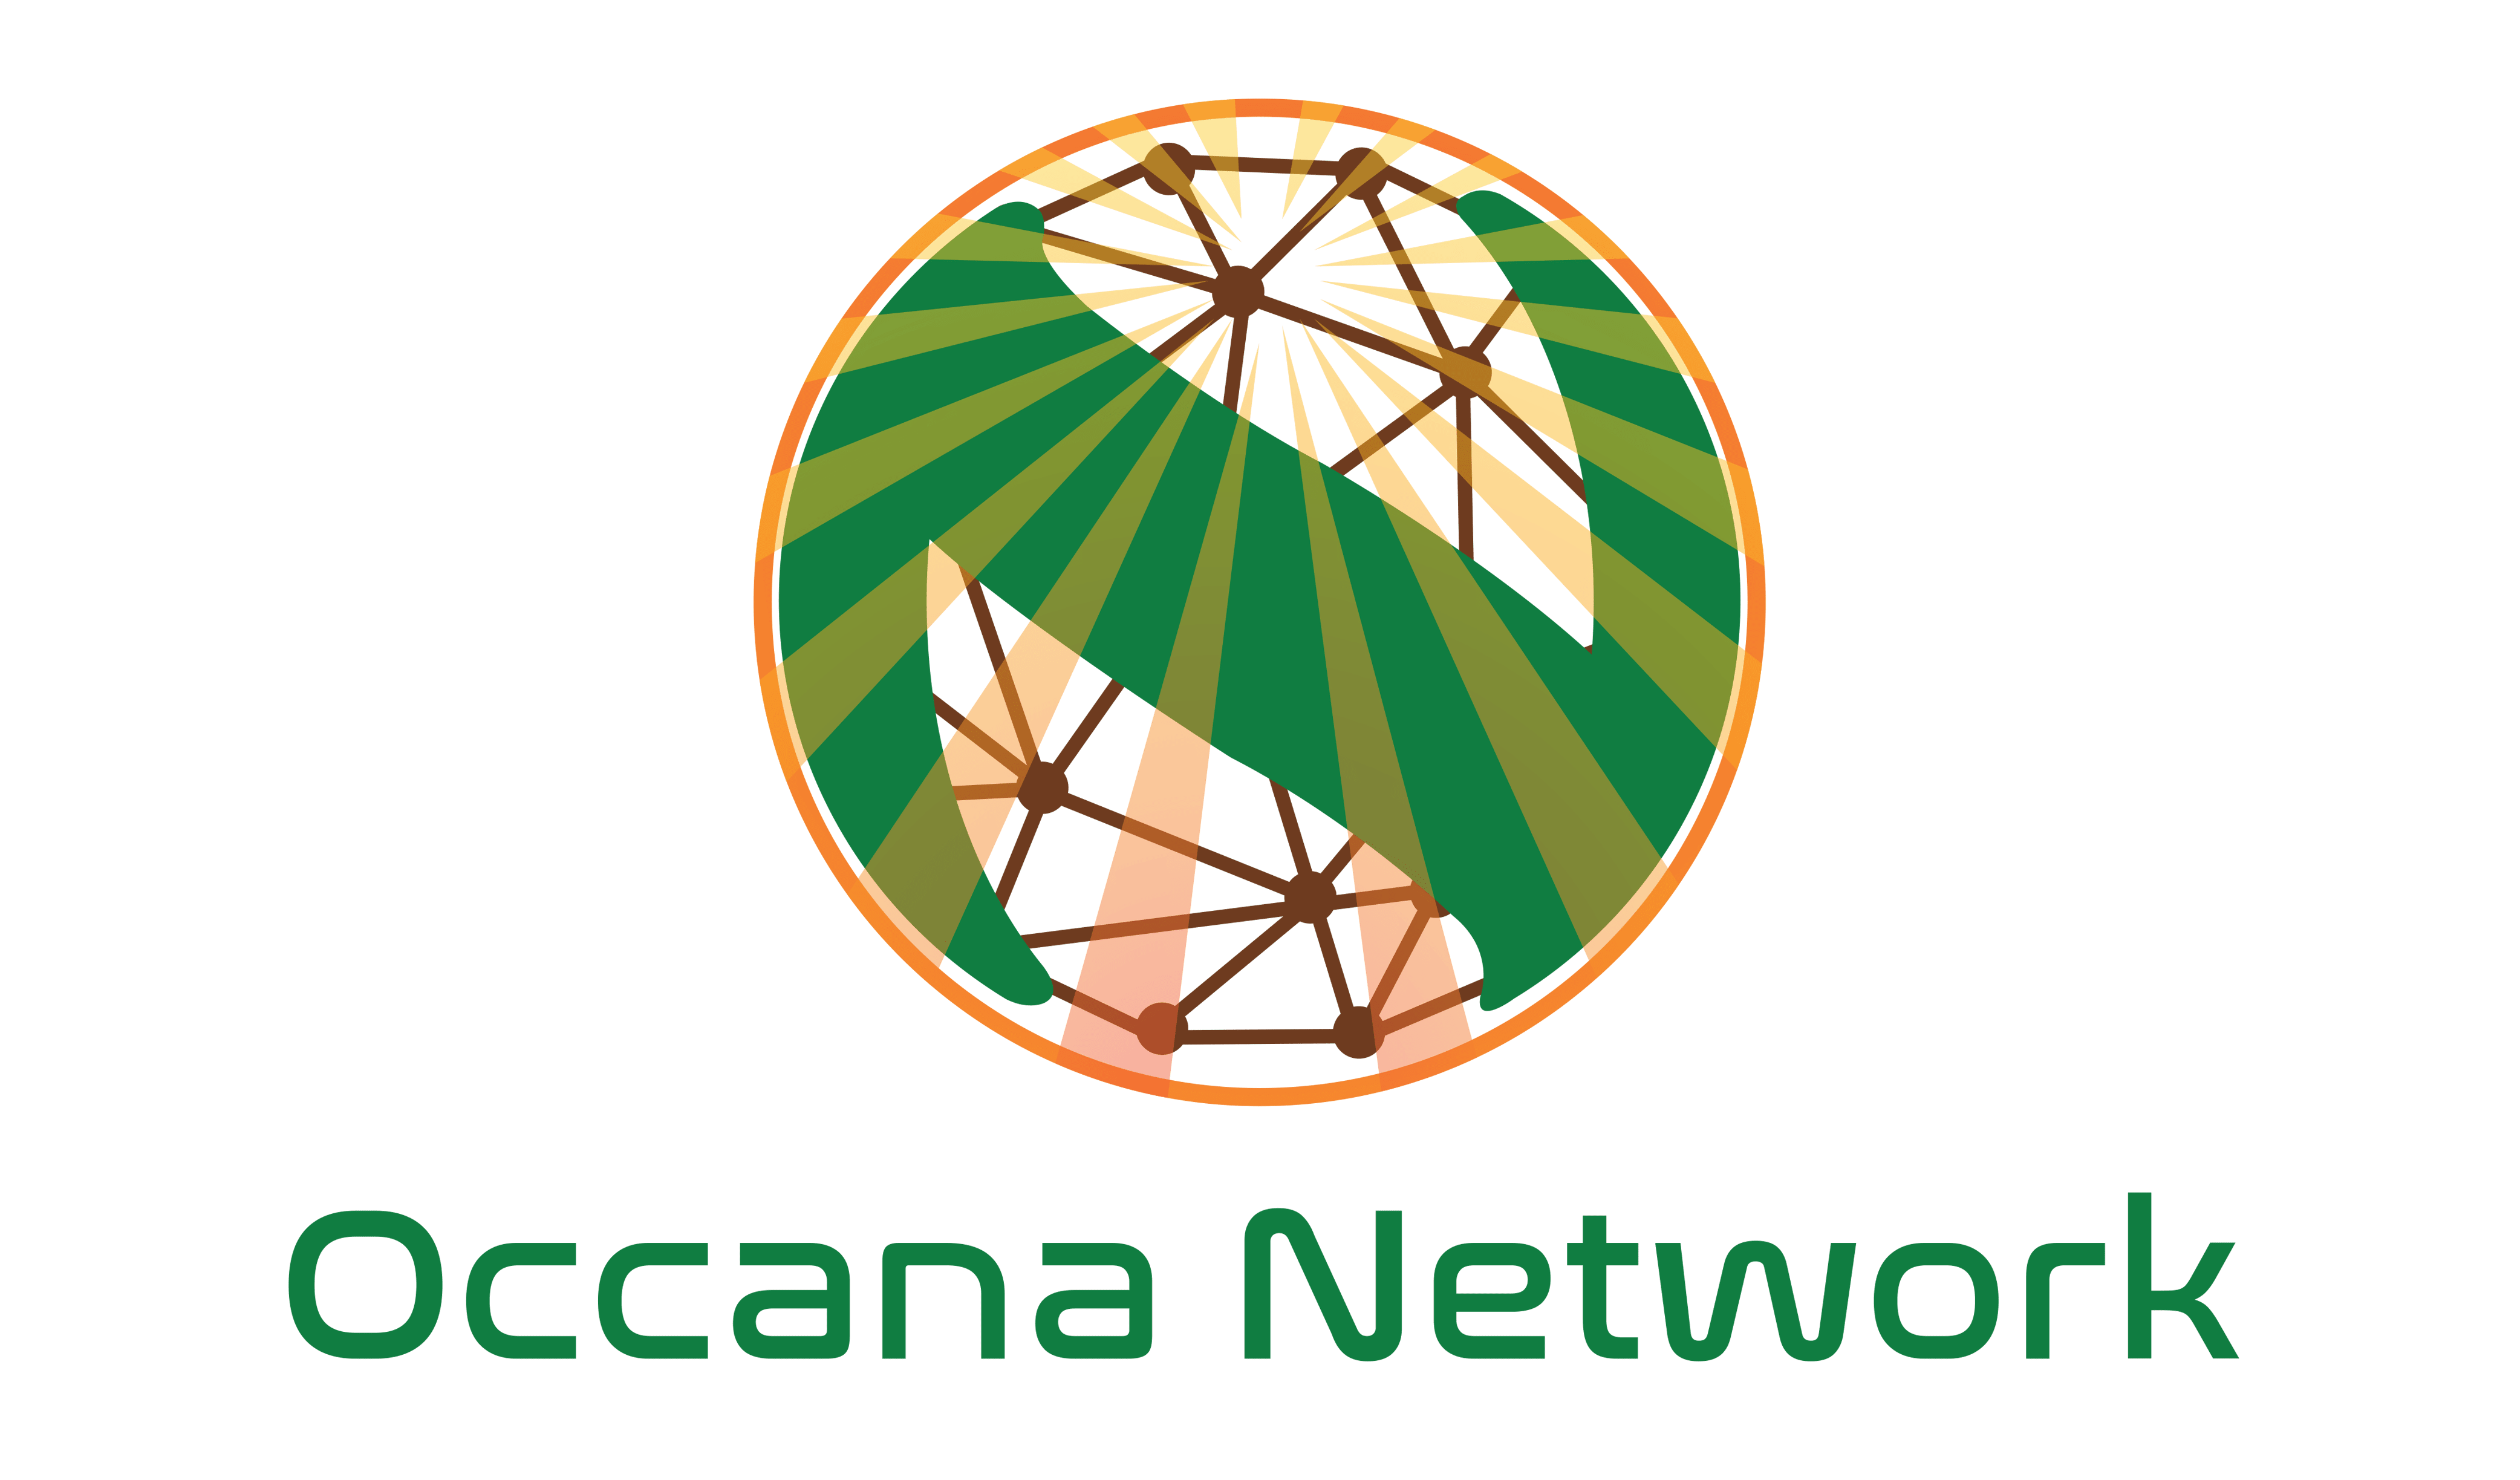 OCCANA Network LLC